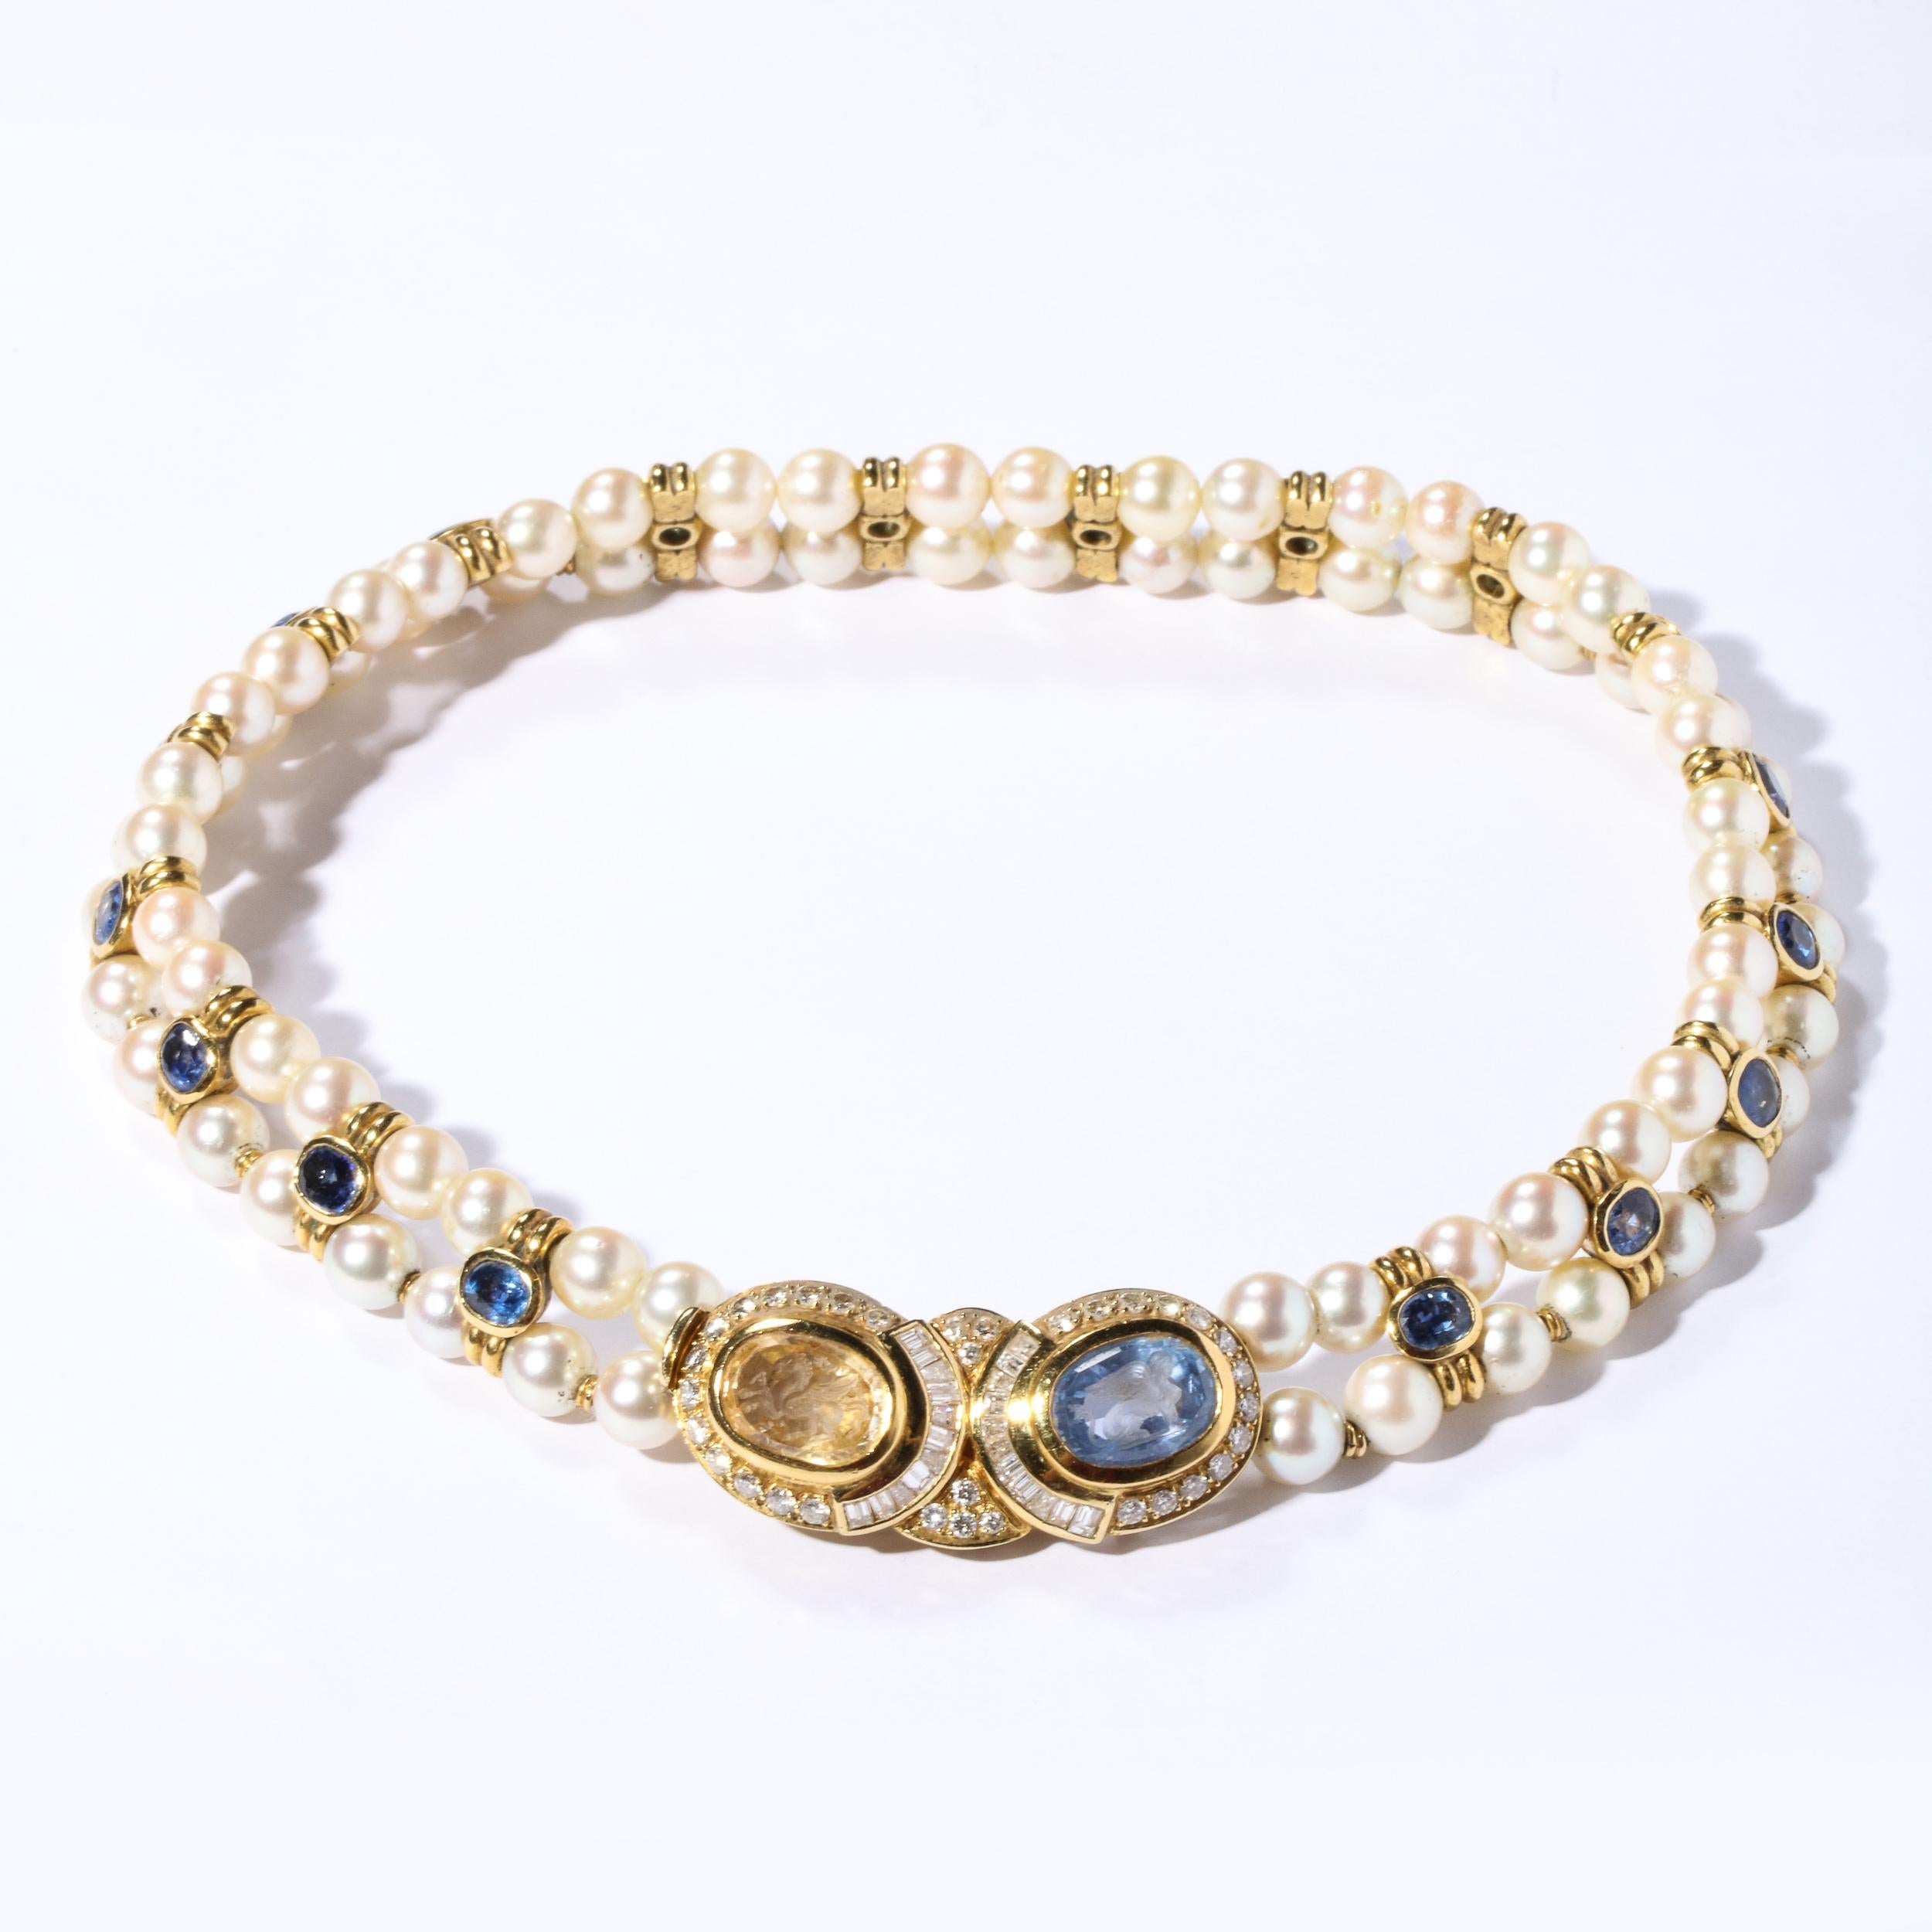 Diese atemberaubende Doppel-Strang Perlen sind von 76 feinen Qualität Perlen ca. 7 mm jeweils mit 18 Spacer von 18k Gold mit ovalen Steinen iolite Lünette satiniert 18k gesetzt umfasst. Der mittlere Verschluss ist mit einem ovalen Citrin und einem